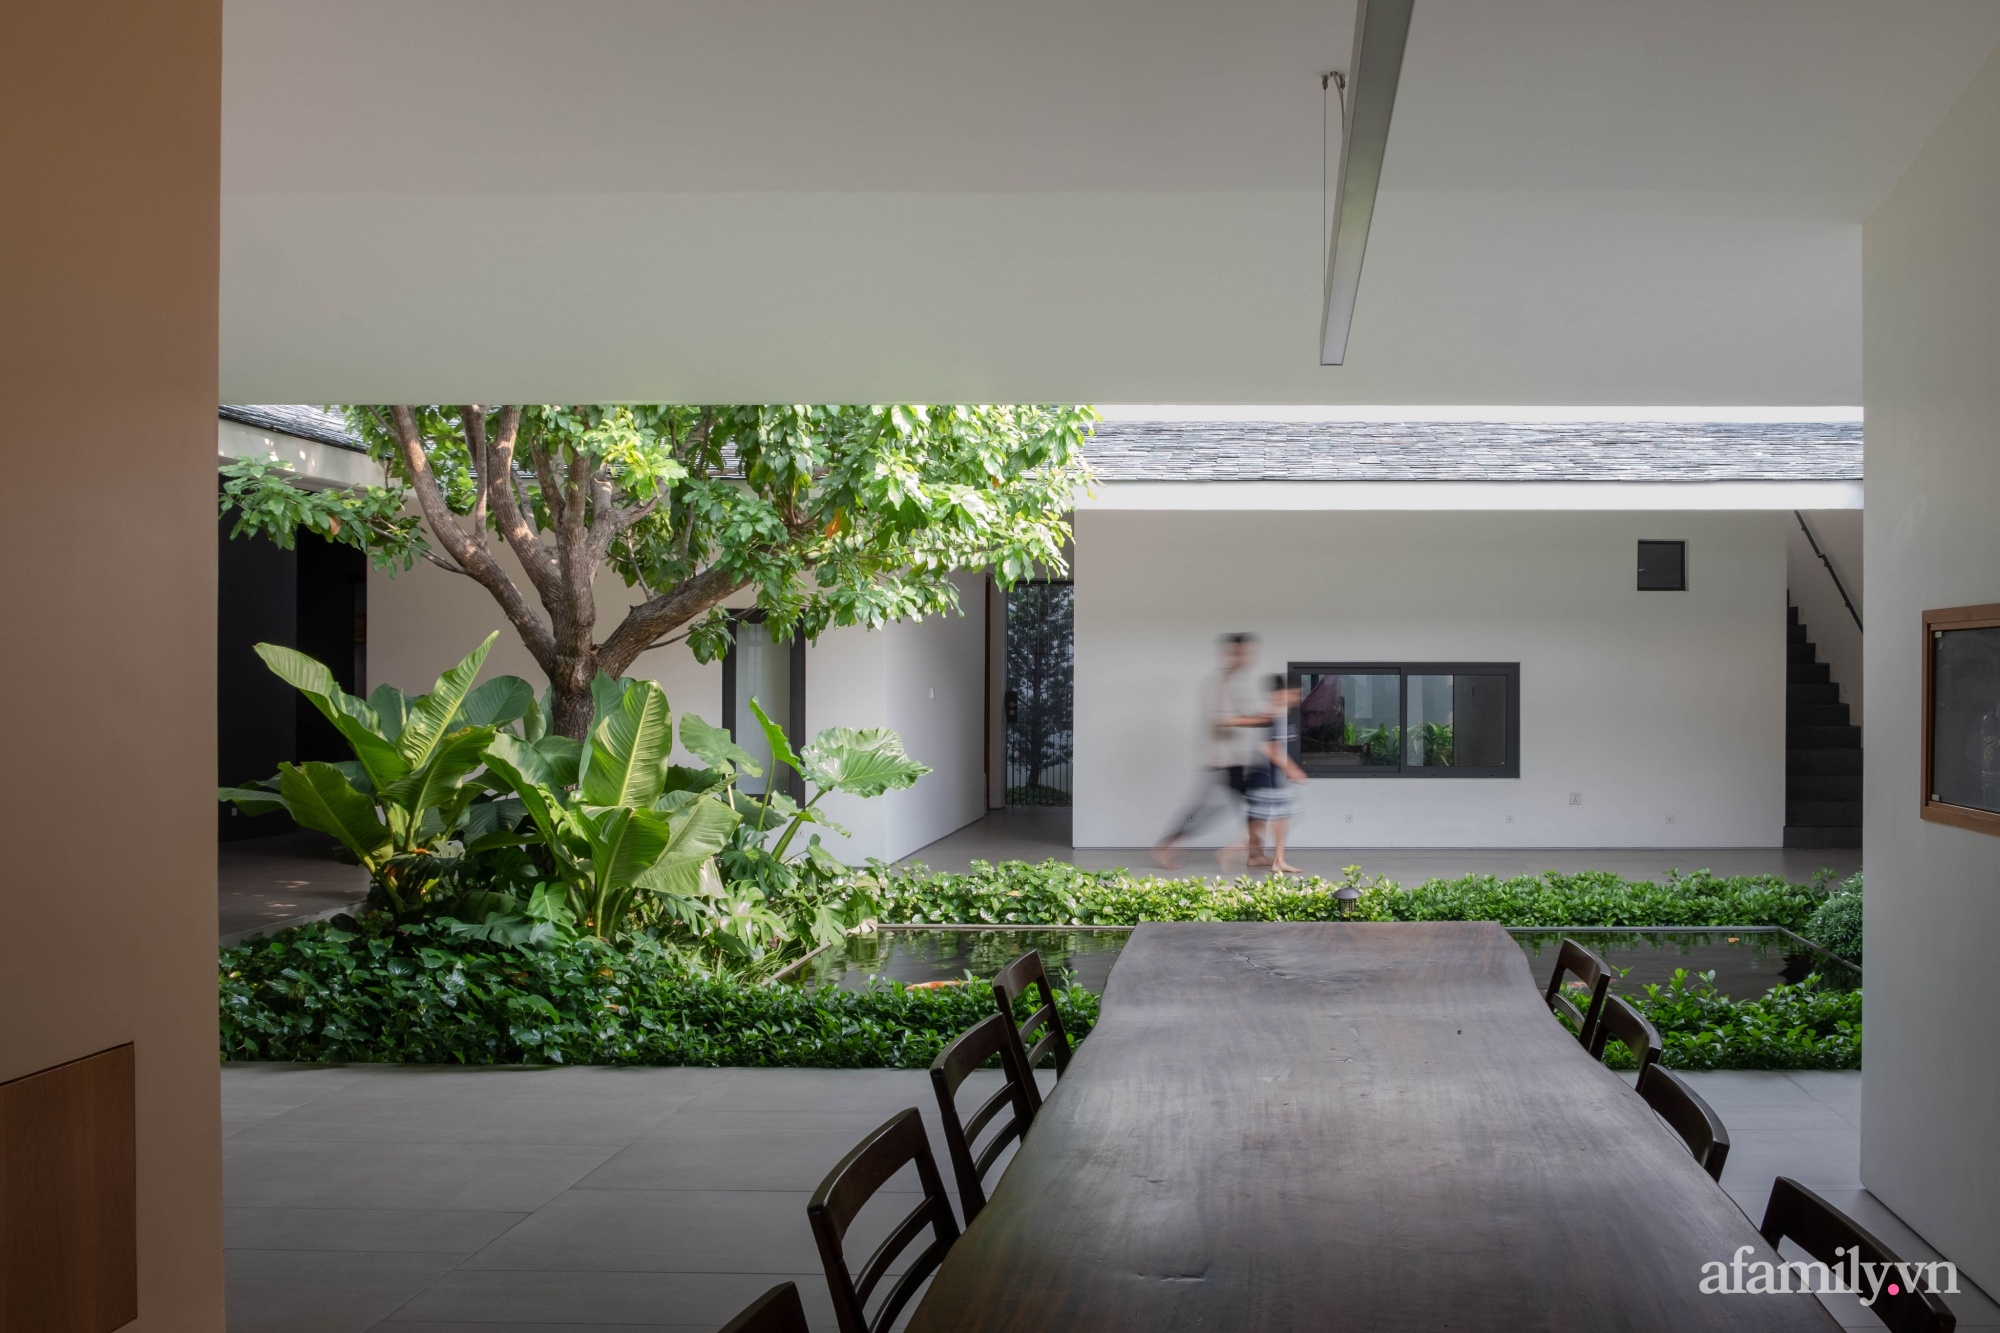 Ngôi nhà rợp mát bóng cây ở ngoại ô Sài Gòn tạo sự gắn kết cho gia đình 3 thế hệ - Ảnh 10.